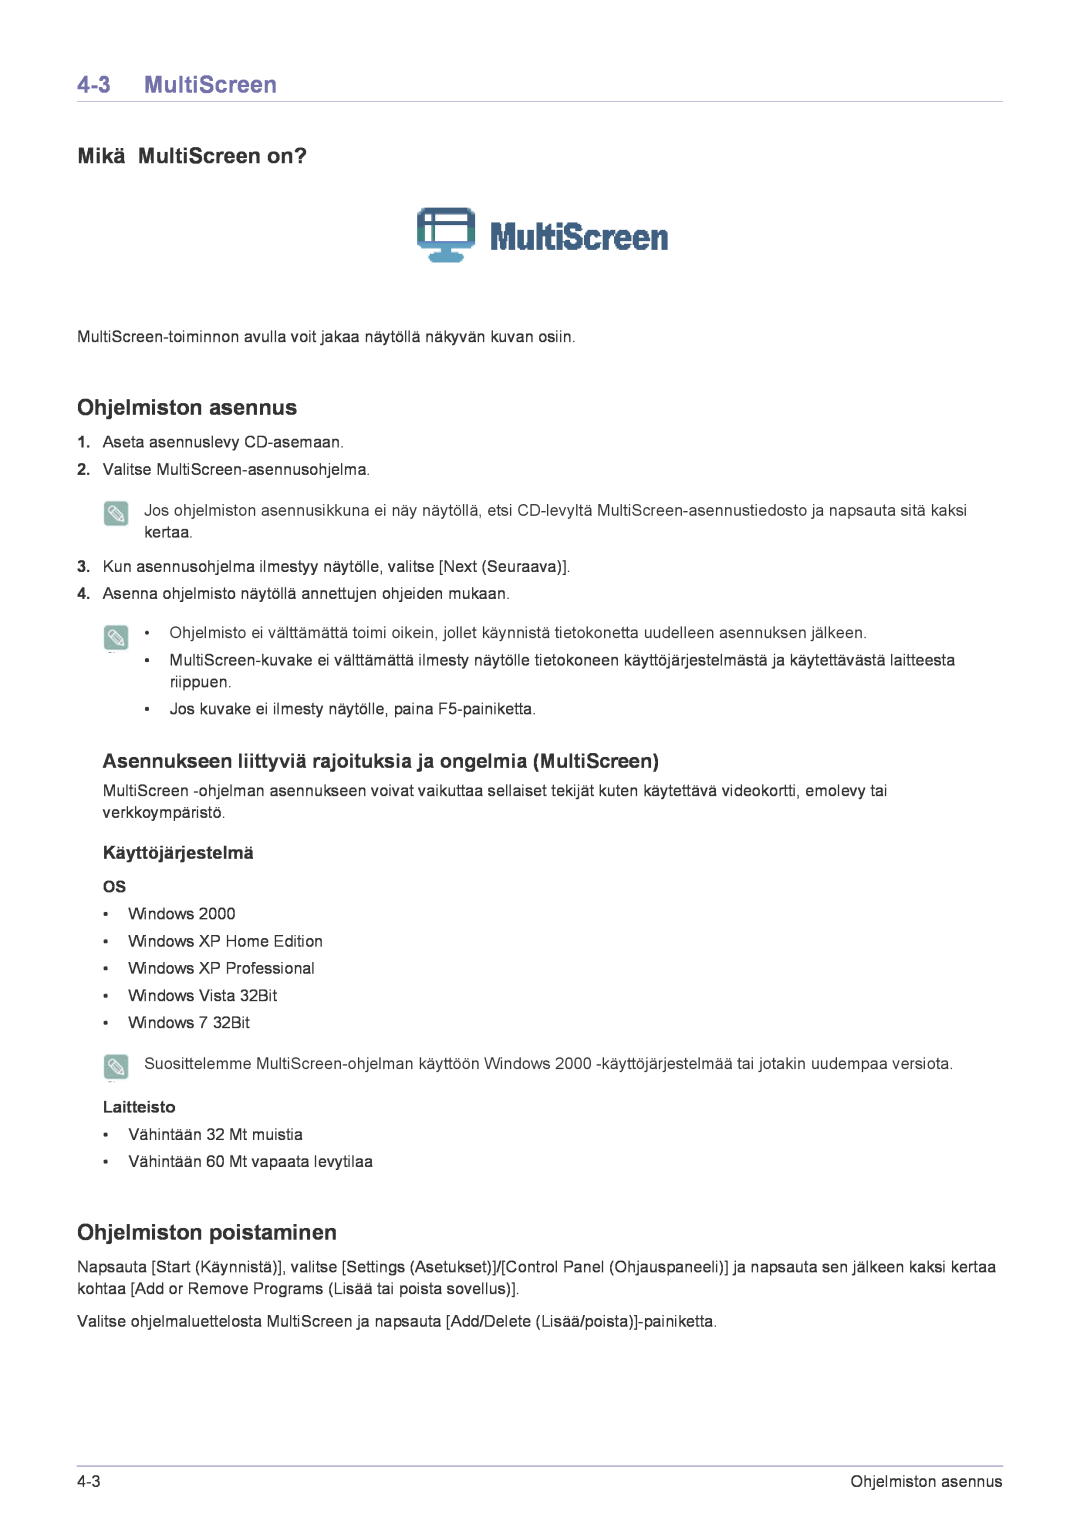 Samsung LF22NPBHBNP/EN manual Mikä MultiScreen on?, Ohjelmiston asennus, Ohjelmiston poistaminen, Käyttöjärjestelmä 